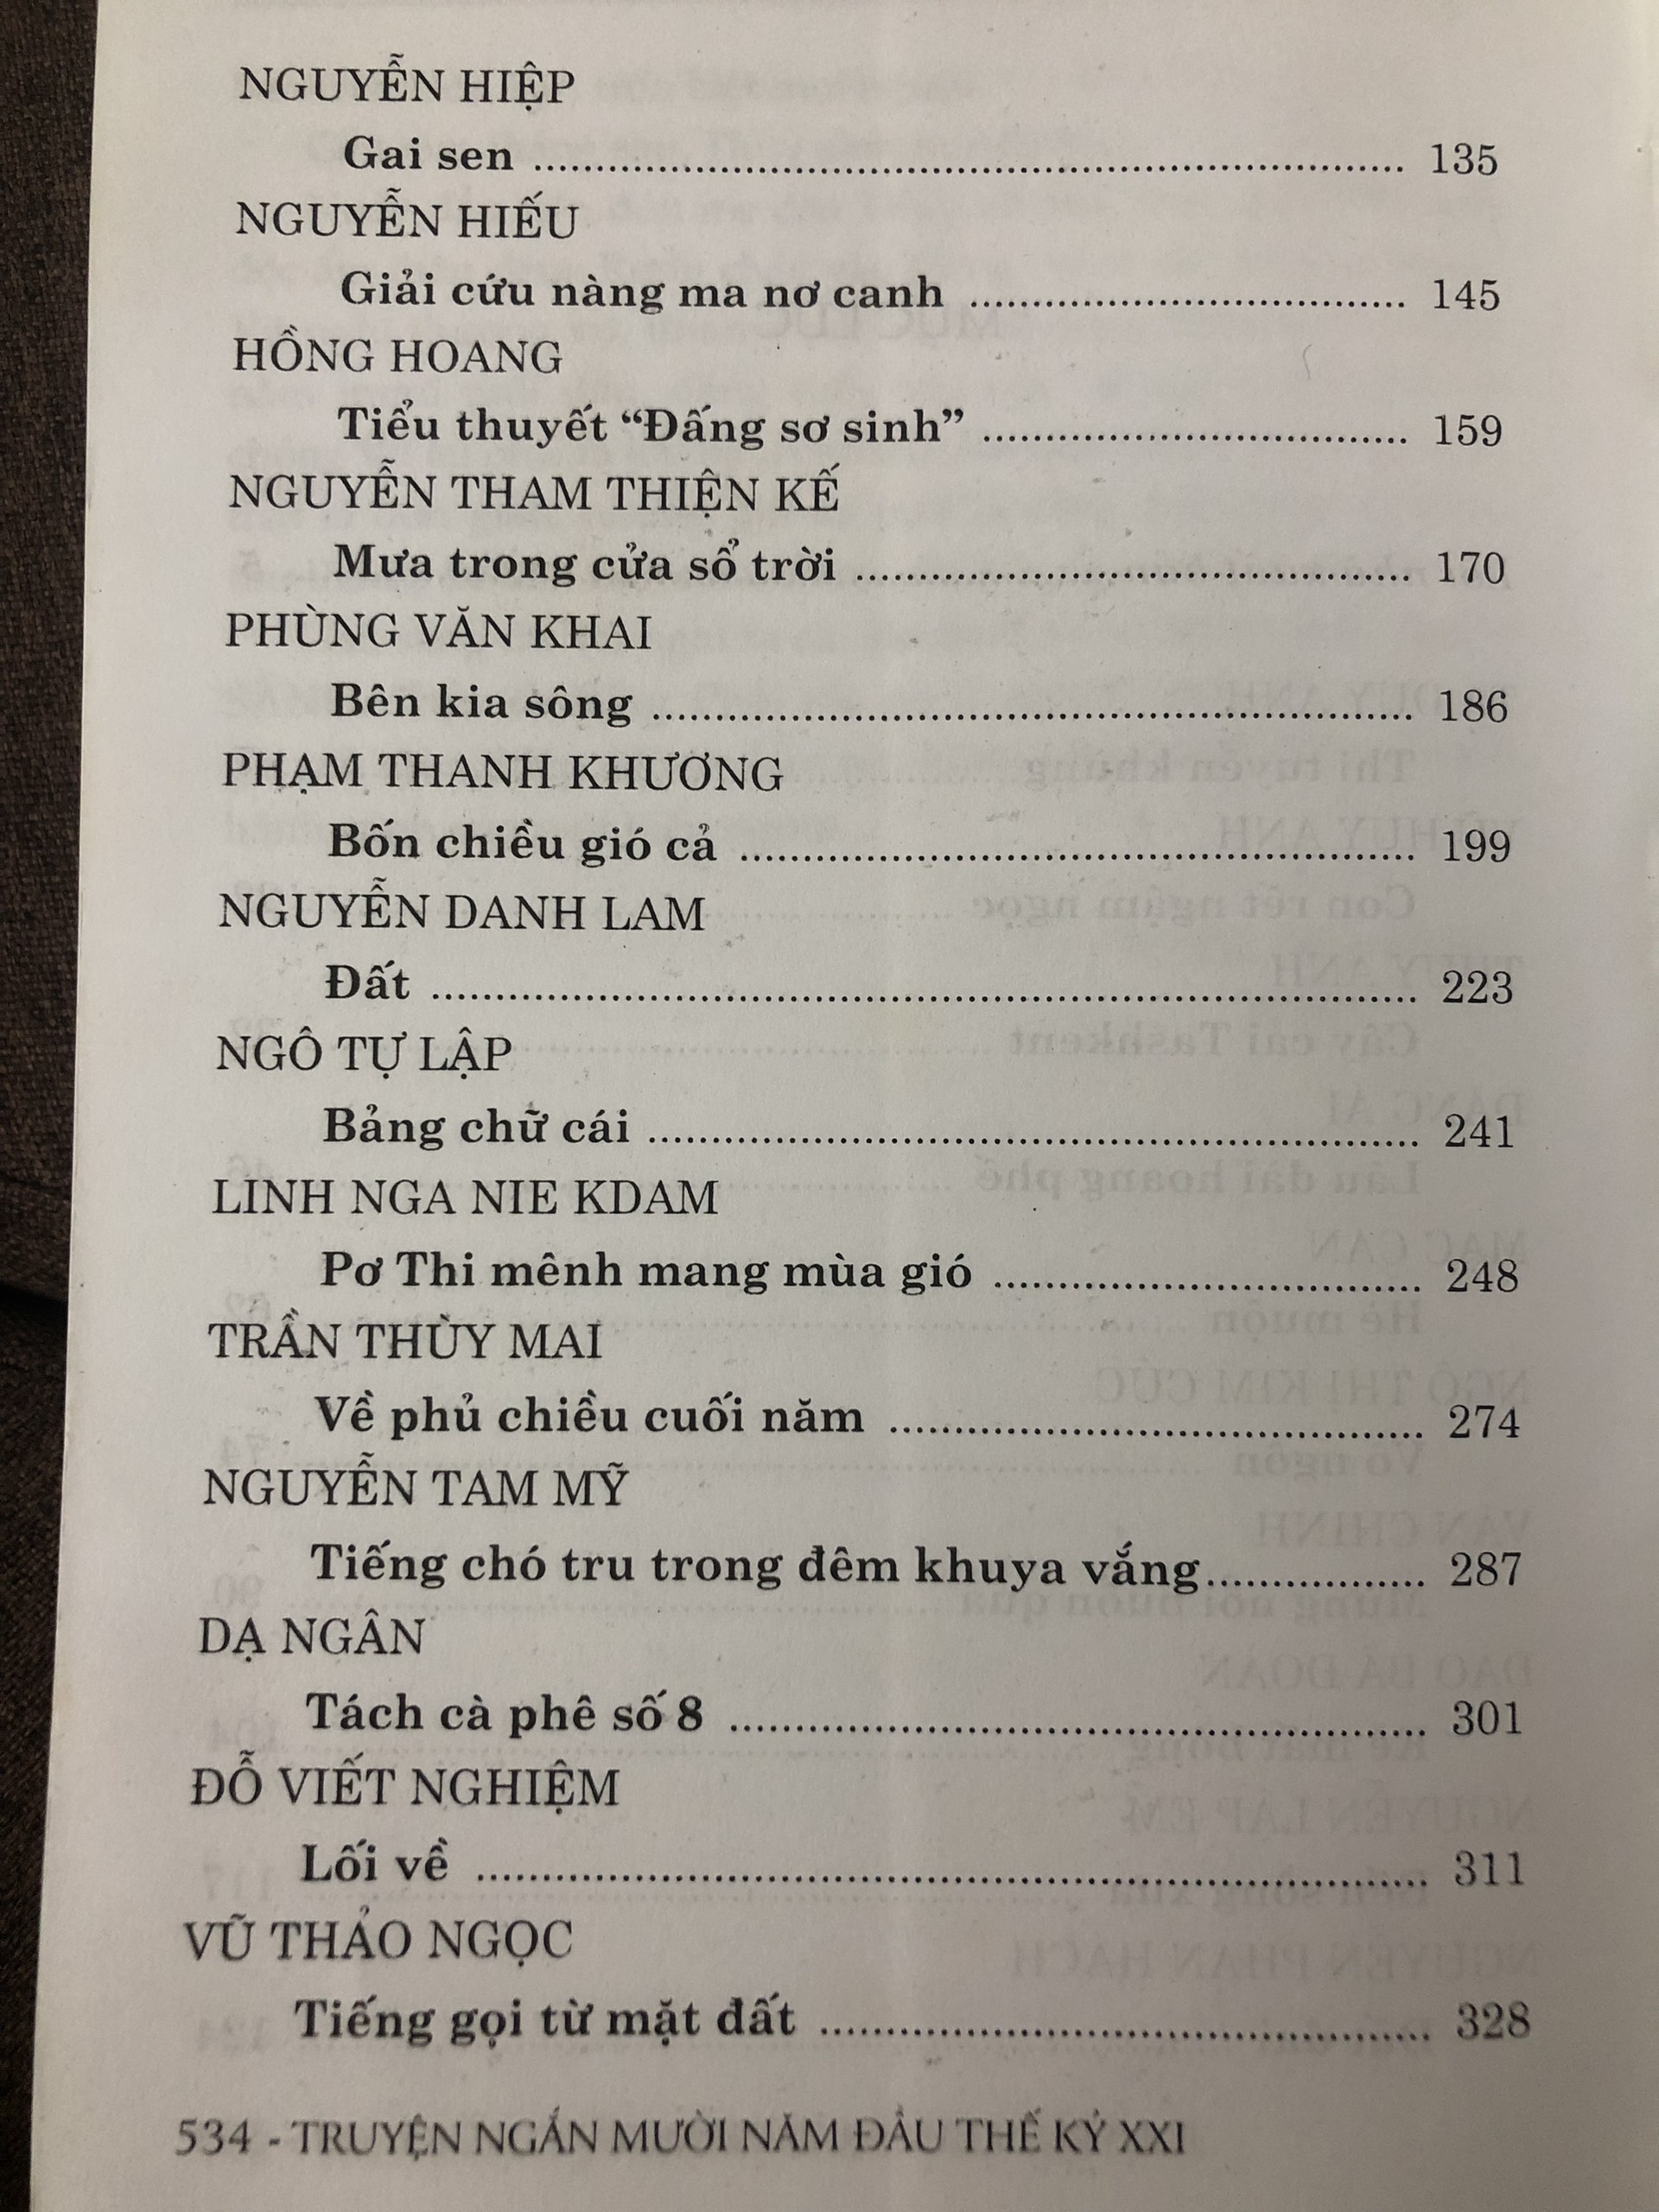 Truyện ngắn 10 năm đầu thế kỷ 21 - Tuyển tập truyện ngắn các tác giả nổi tiếng văn học Việt Nam đương đại